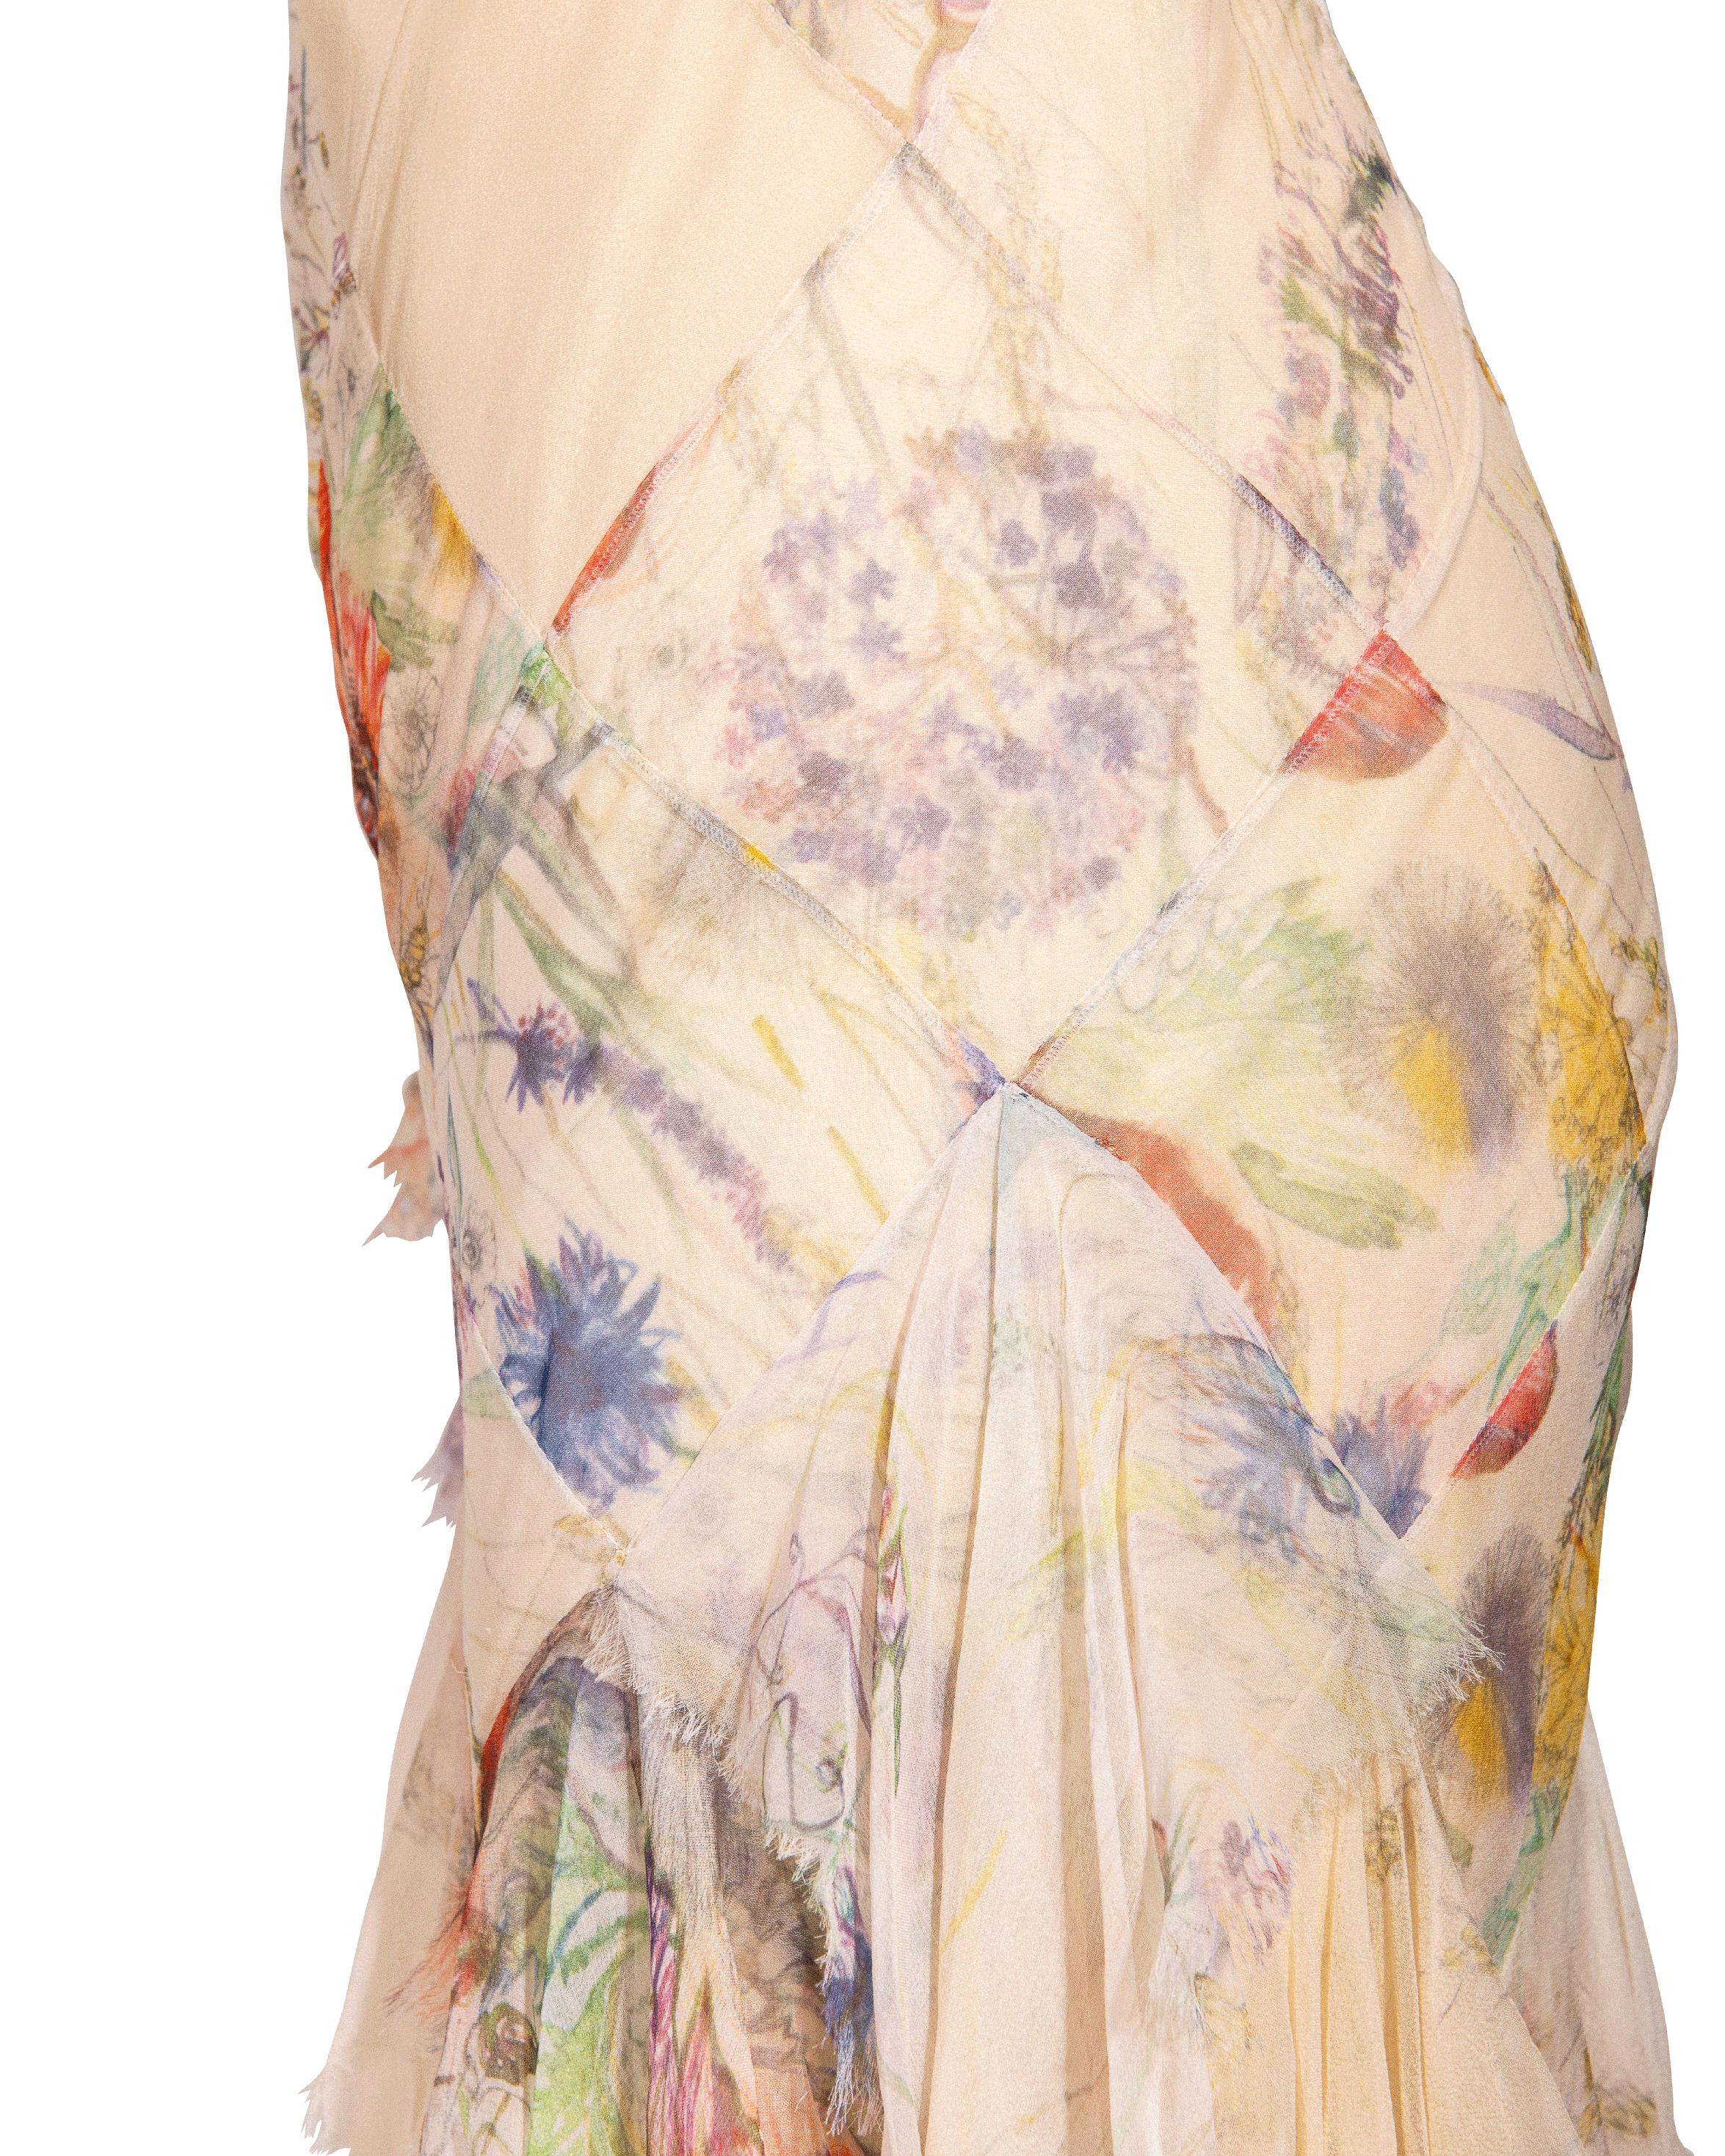 S/S 2004 Alexander McQueen Floral Print Bias Cut Silk Chiffon Flutter Gown 5